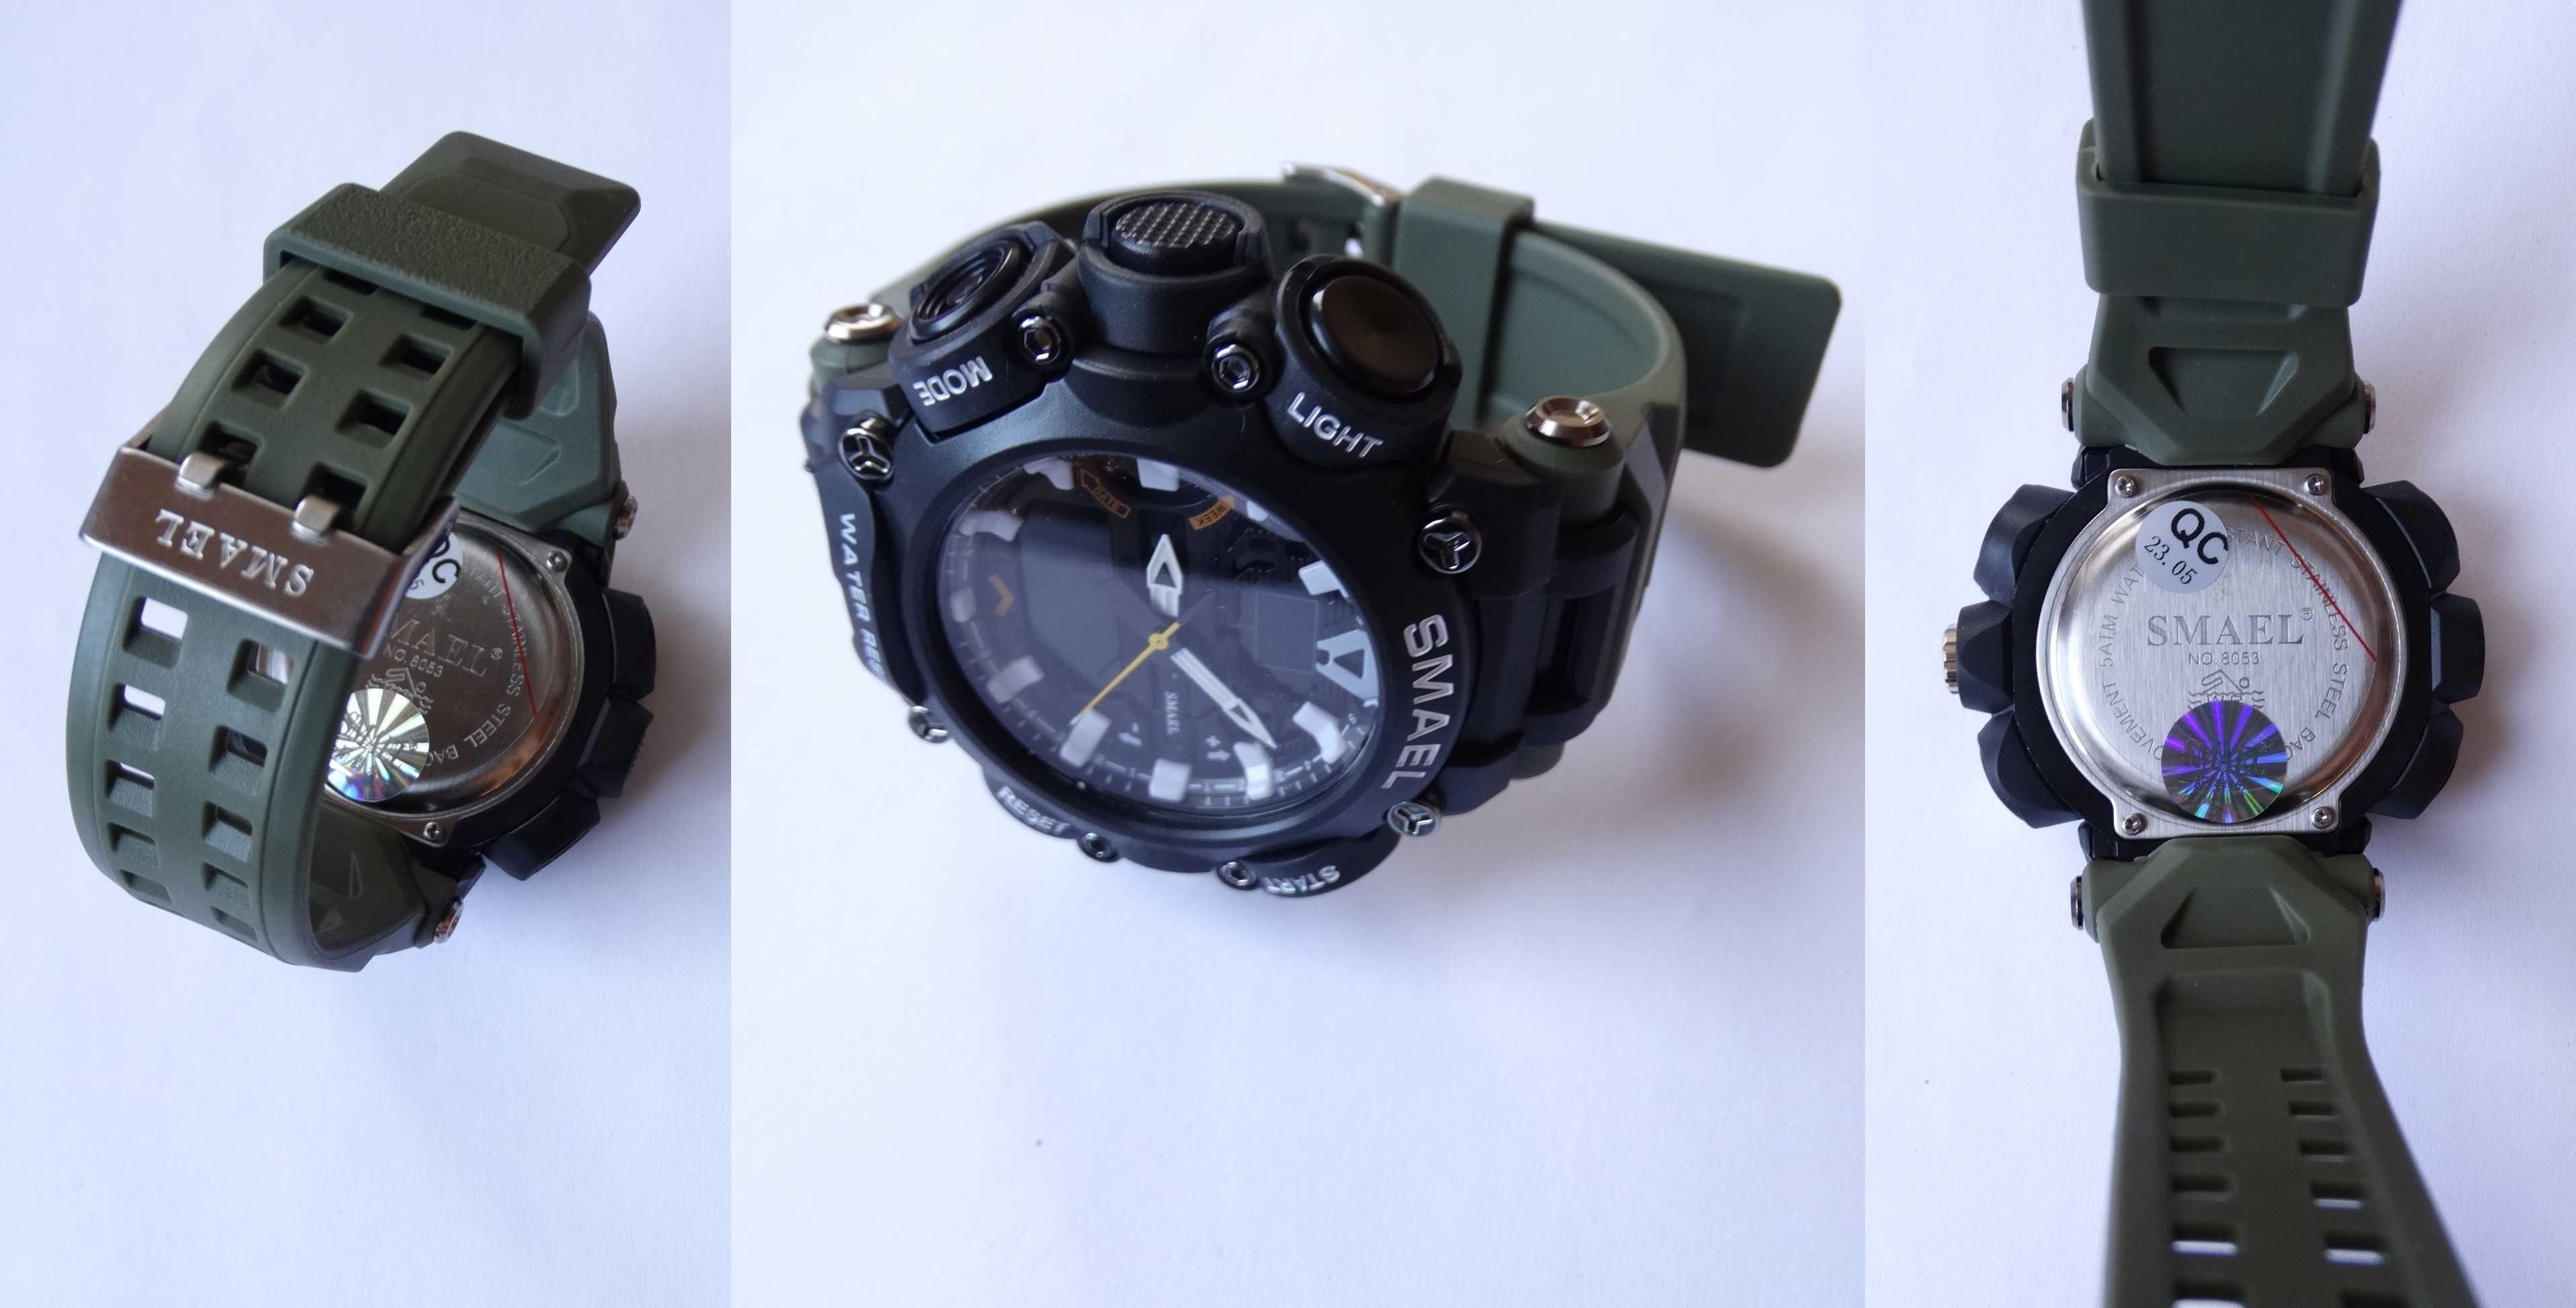 Duży militarny zegarek Smael cyfrowy elektroniczny sportowy wojskowy